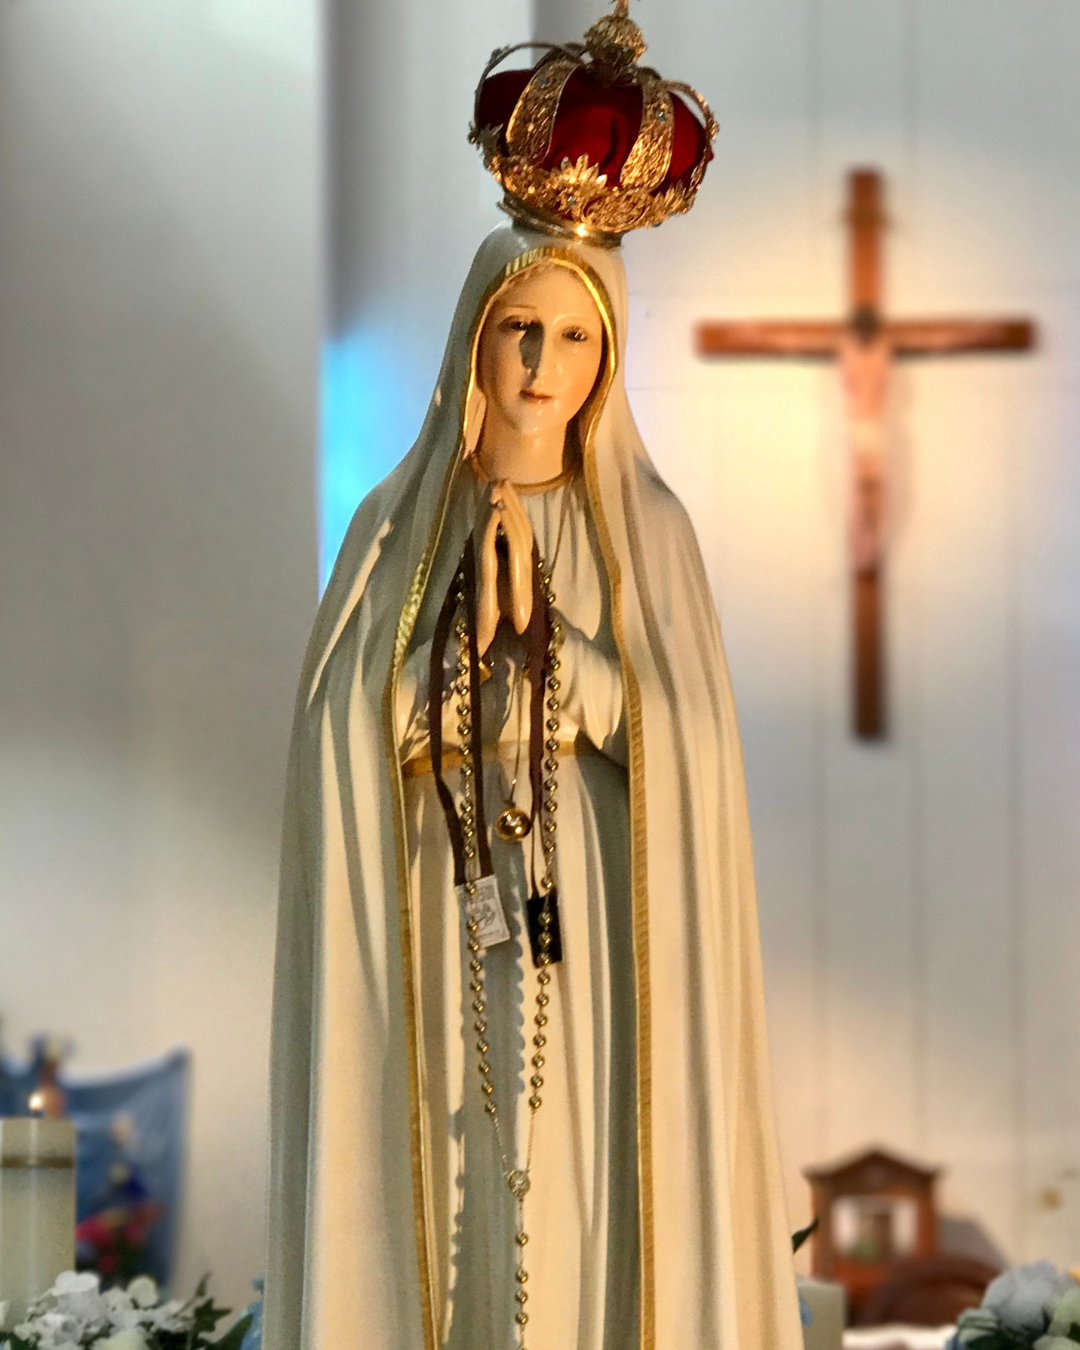 fatima our lady, Our Lady of Fatima, Sister Lucia, fatima portugal, fatima miracle, fatima prophesy 